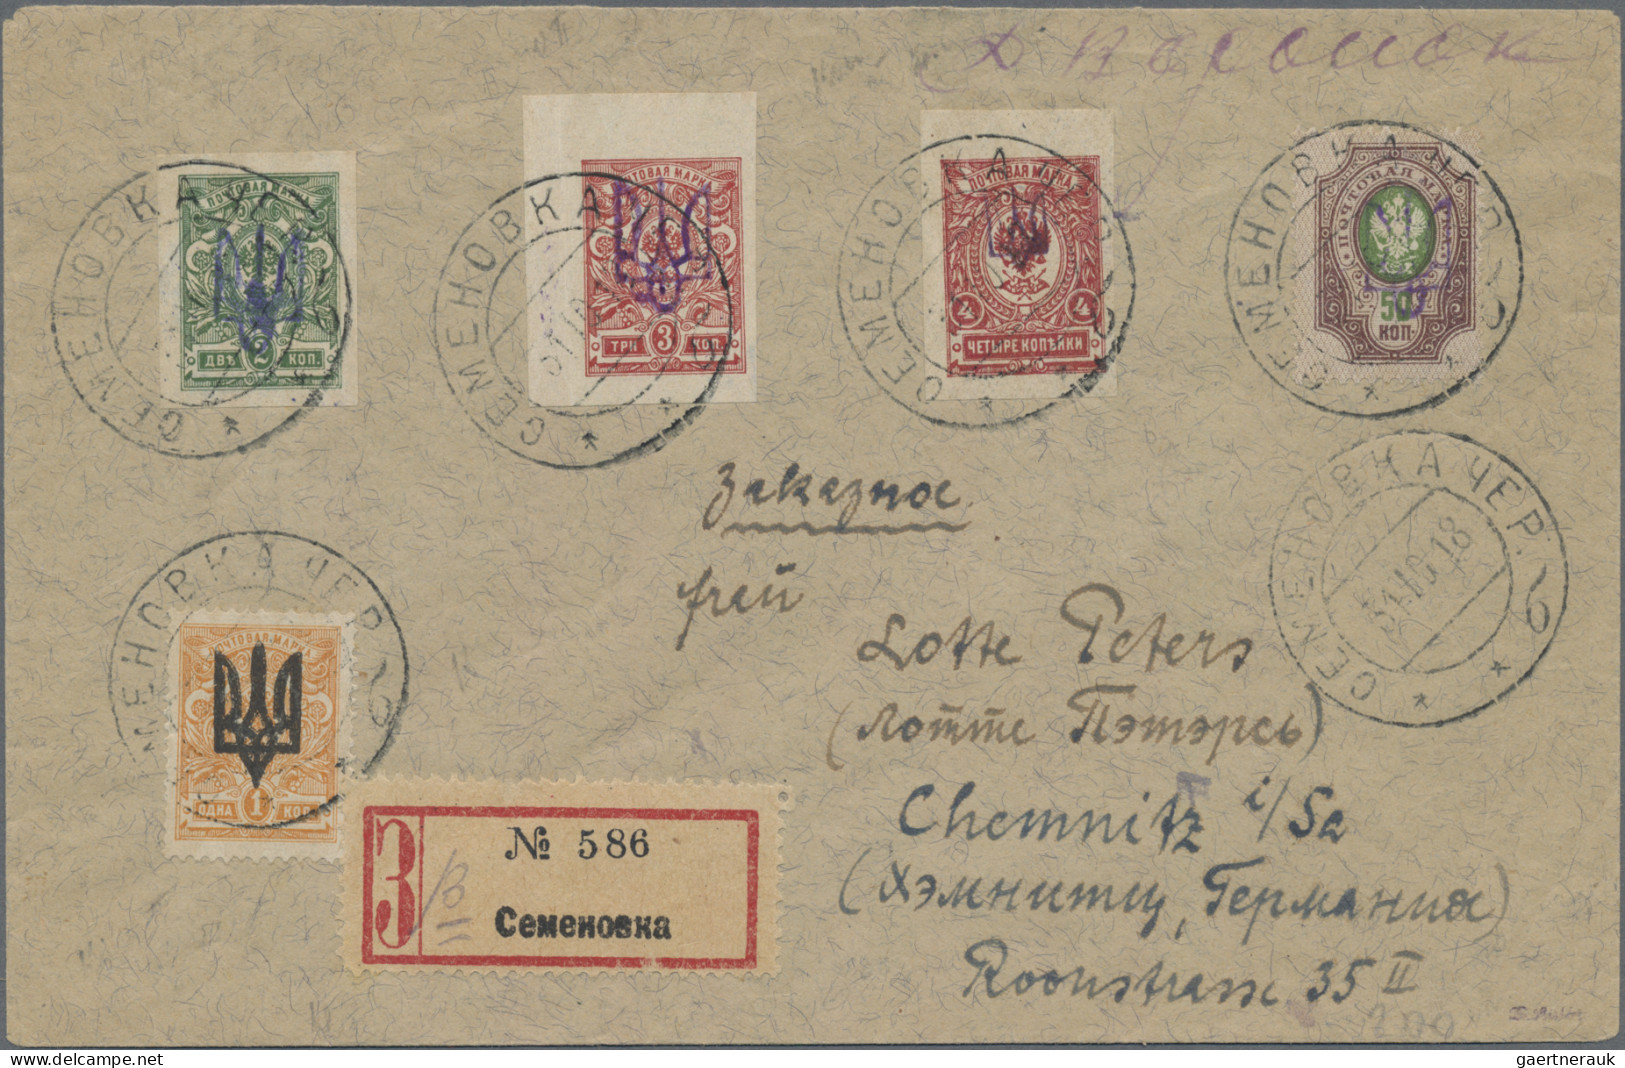 Ukraina: 1918 Registered Cover From Semenovka To Chemnitz, Germany Franked By Fi - Ukraine